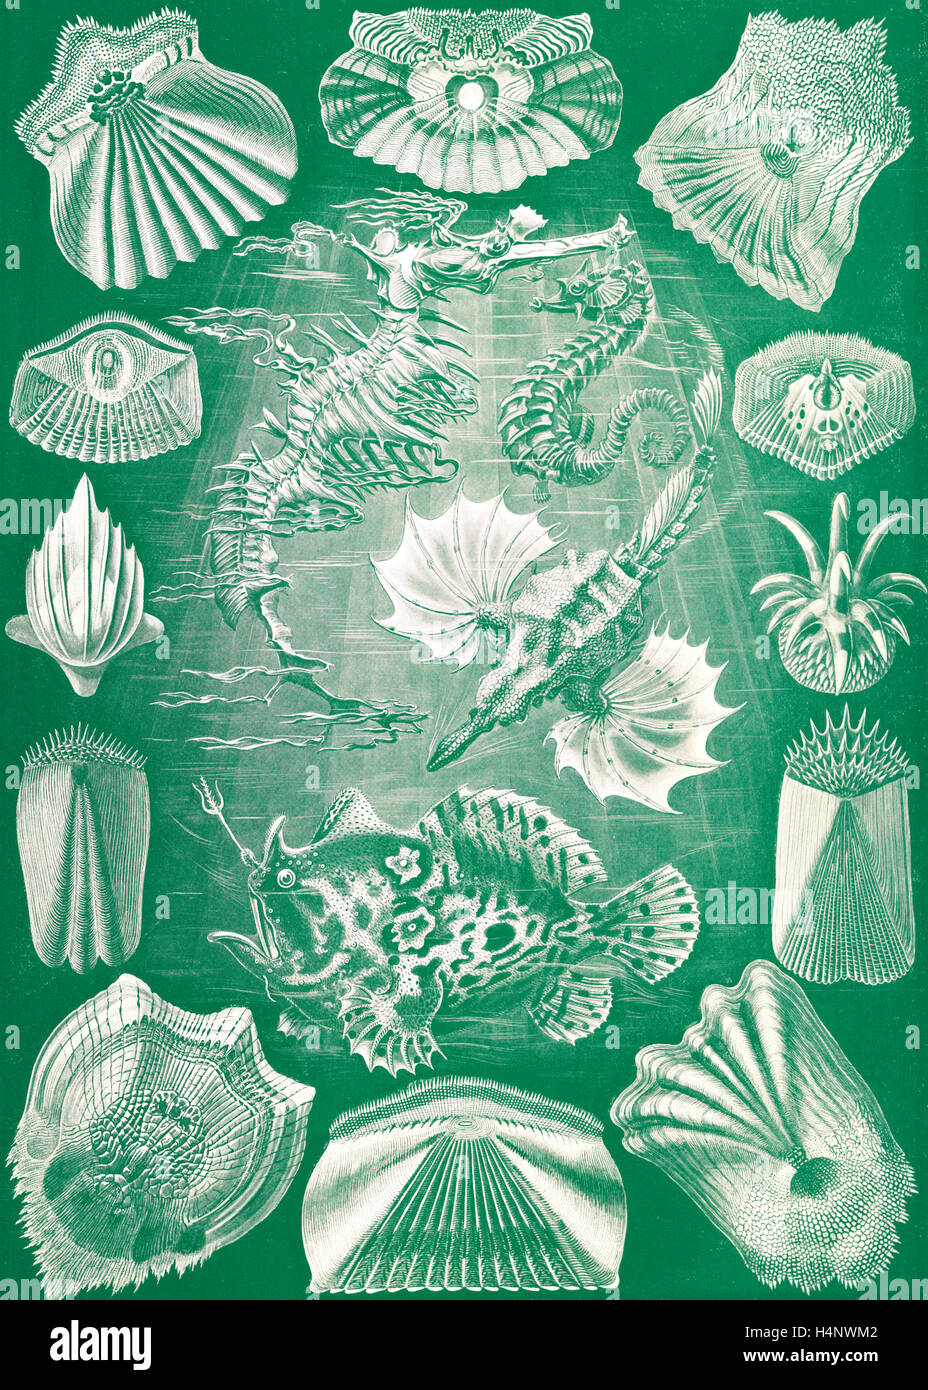 L'illustration montre le poisson. Teleostei. - Knochenfische, 1 : impression photomécanique couleur feuille ; 36 x 26 cm., 1904. Ernst Haeckel Banque D'Images